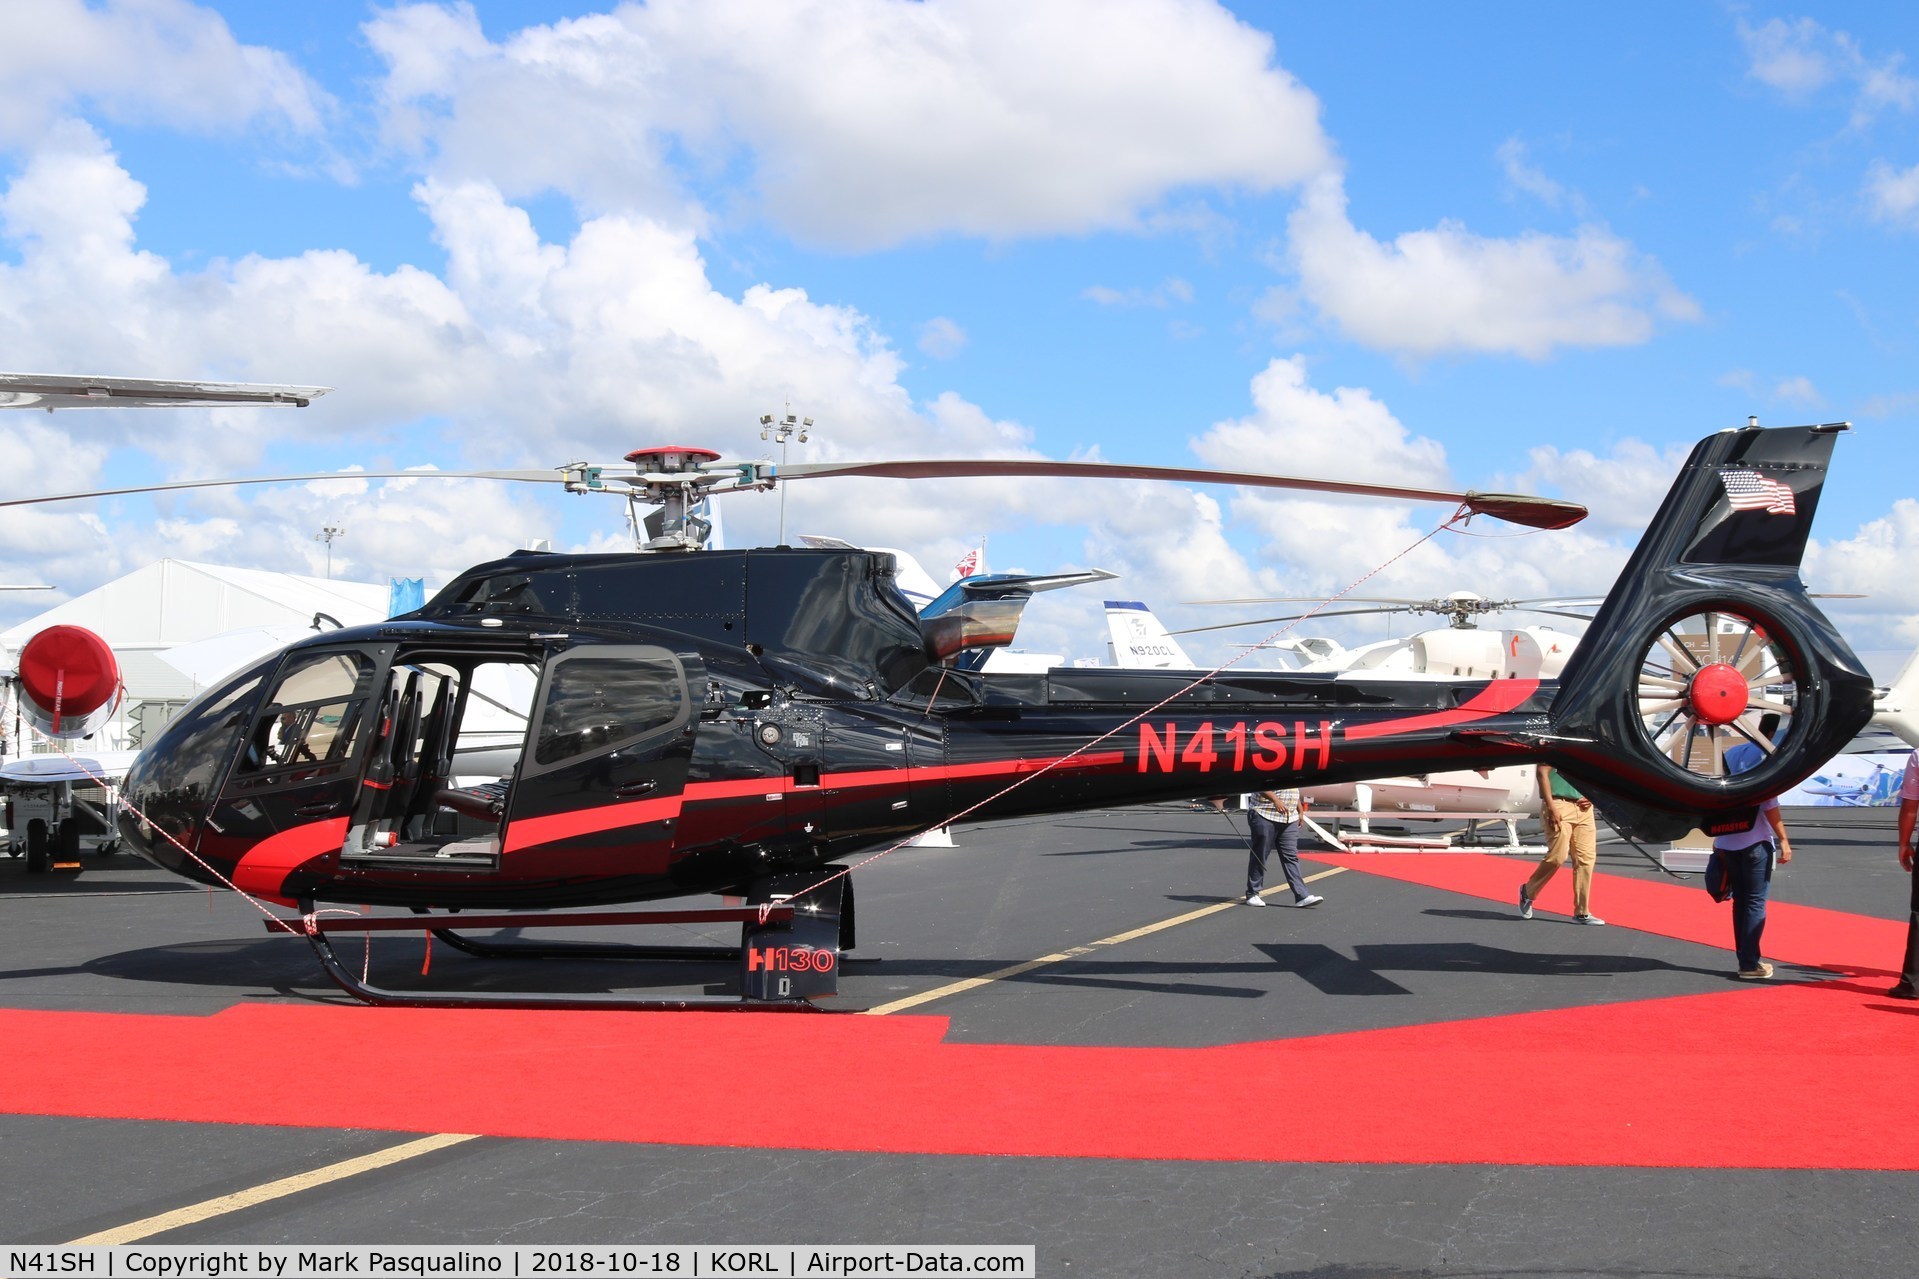 N41SH, Airbus Helicopters EC-130T-2 C/N 8300, EC-130T-2